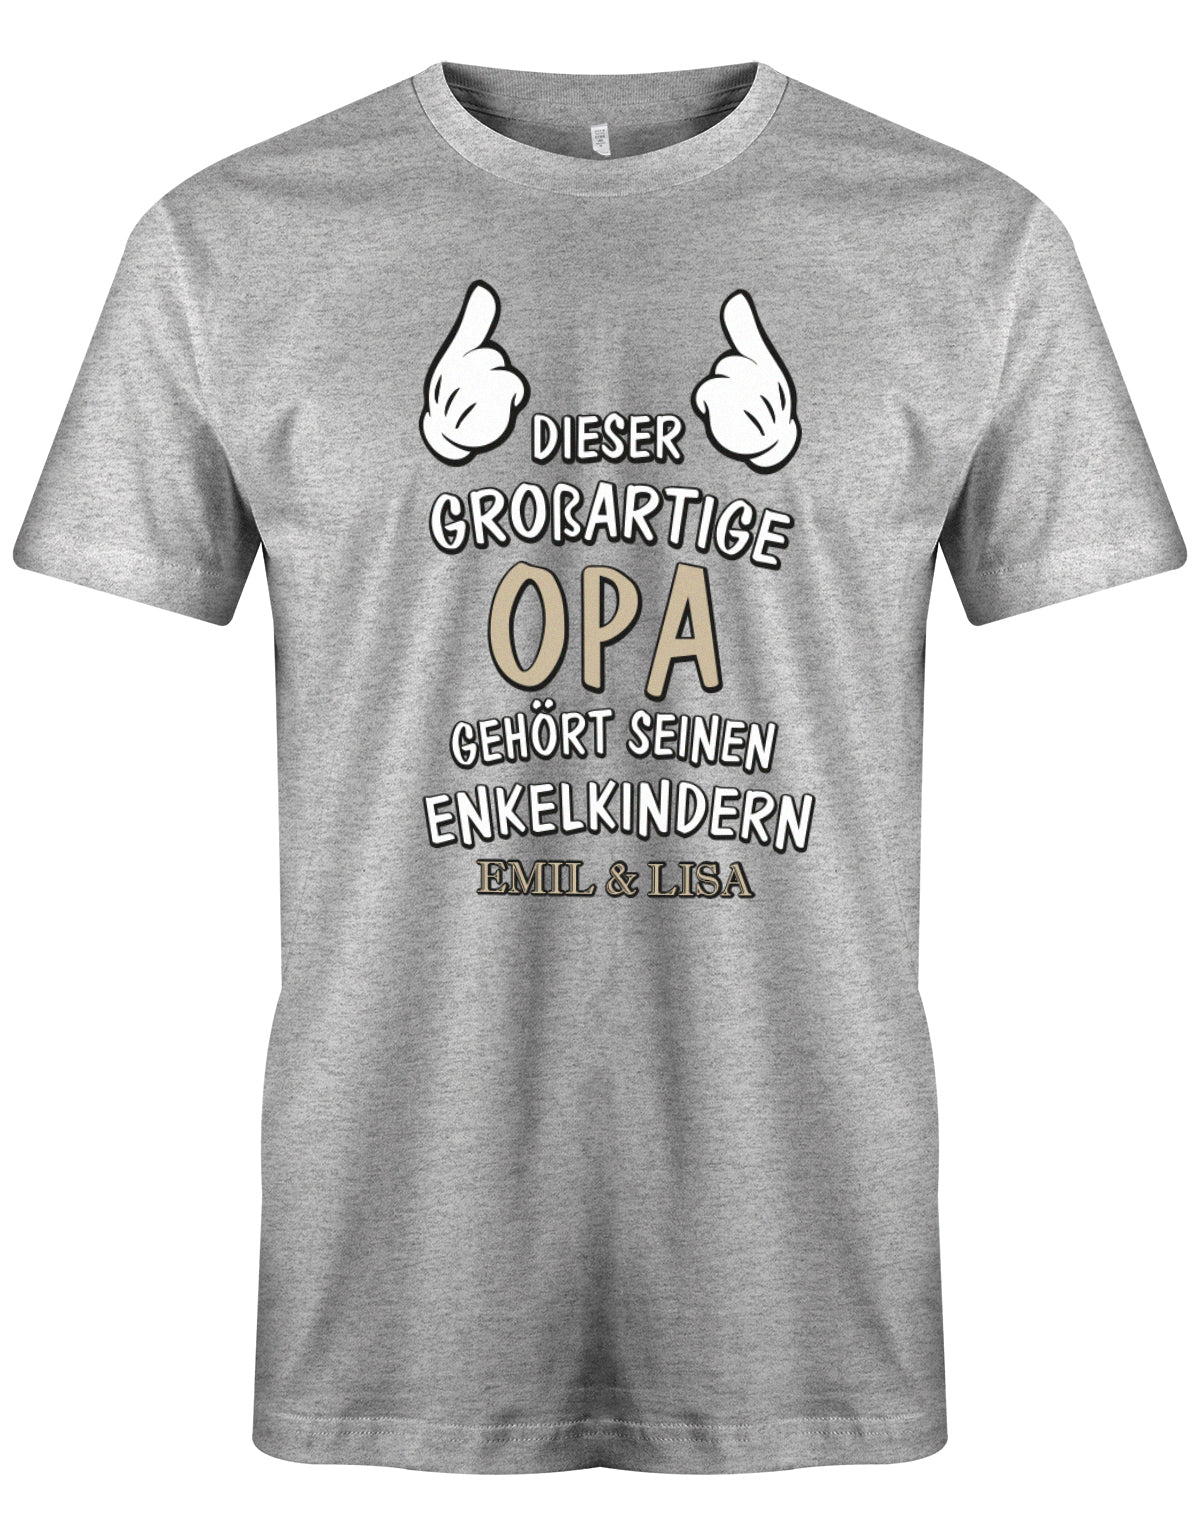 Opa Shirt personalisiert - Dieser großartige Opa gehört seinen Enkelkindern. Mit Namen der Enkel. Grau